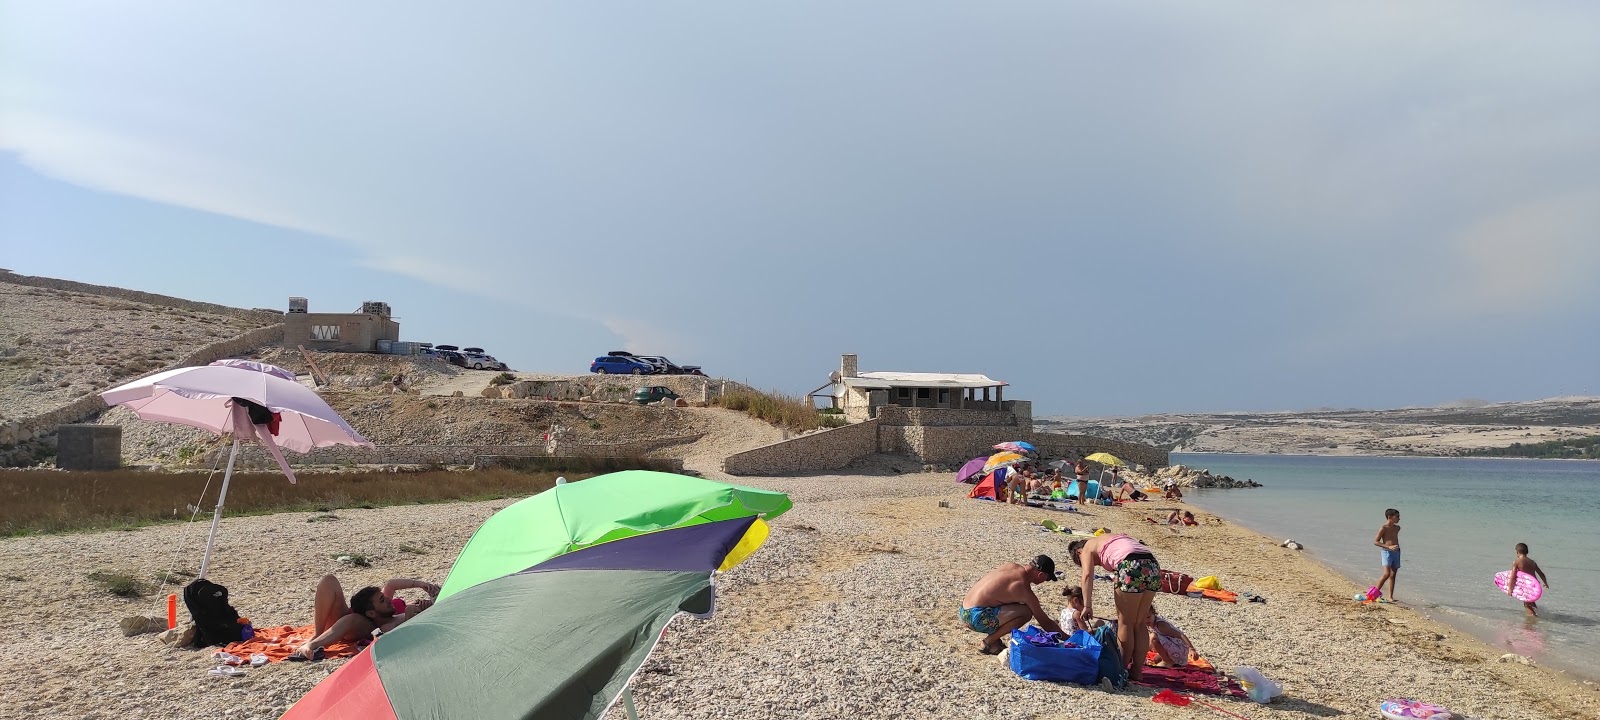 Prnjica beach'in fotoğrafı - rahatlamayı sevenler arasında popüler bir yer